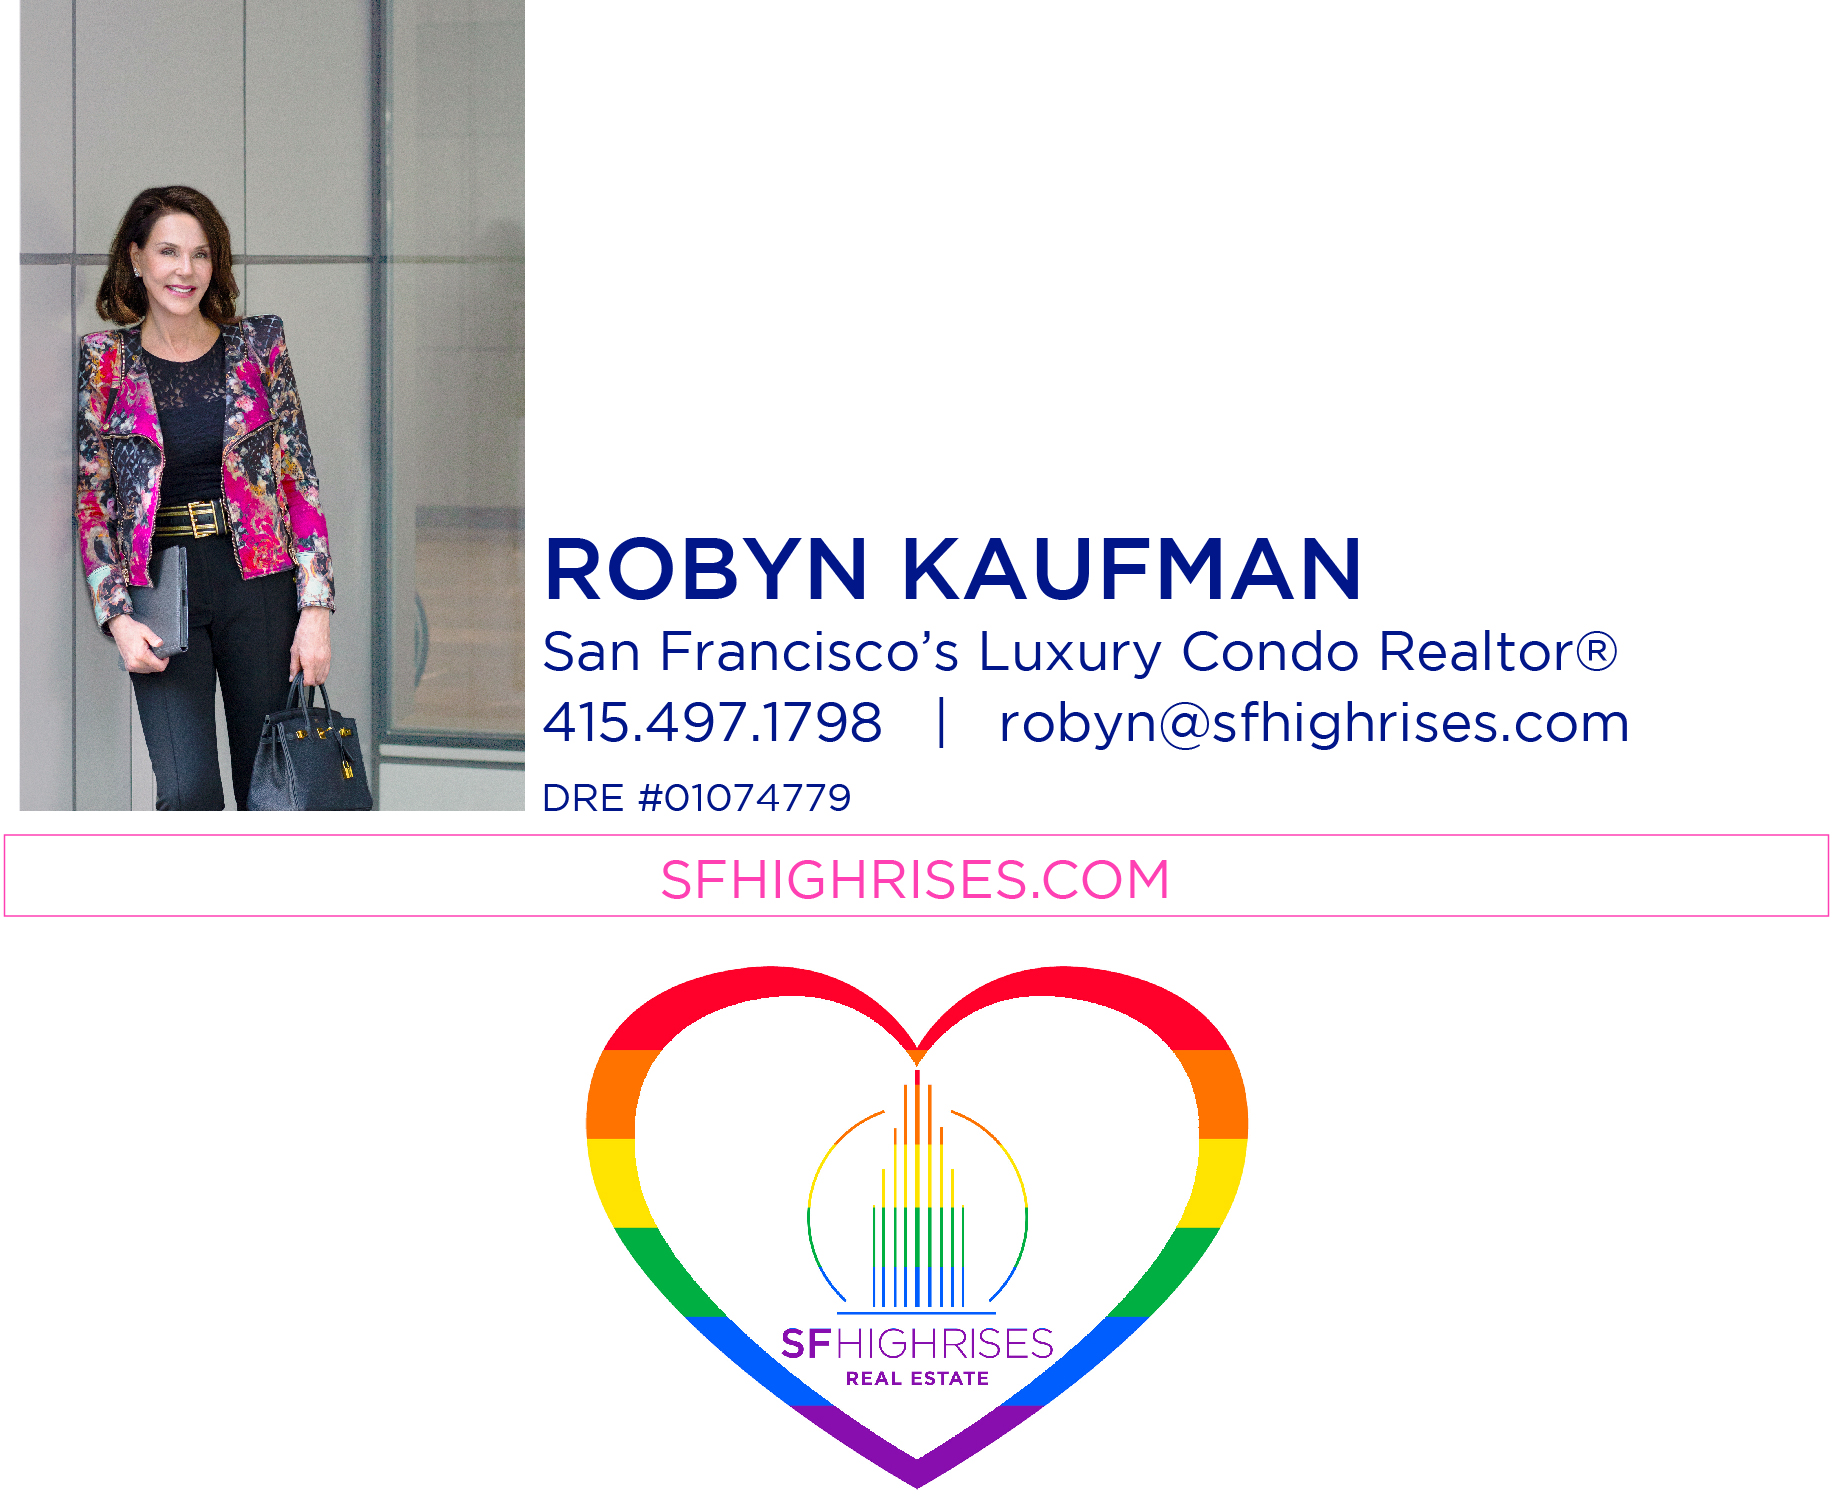 Robyn Kaufman info